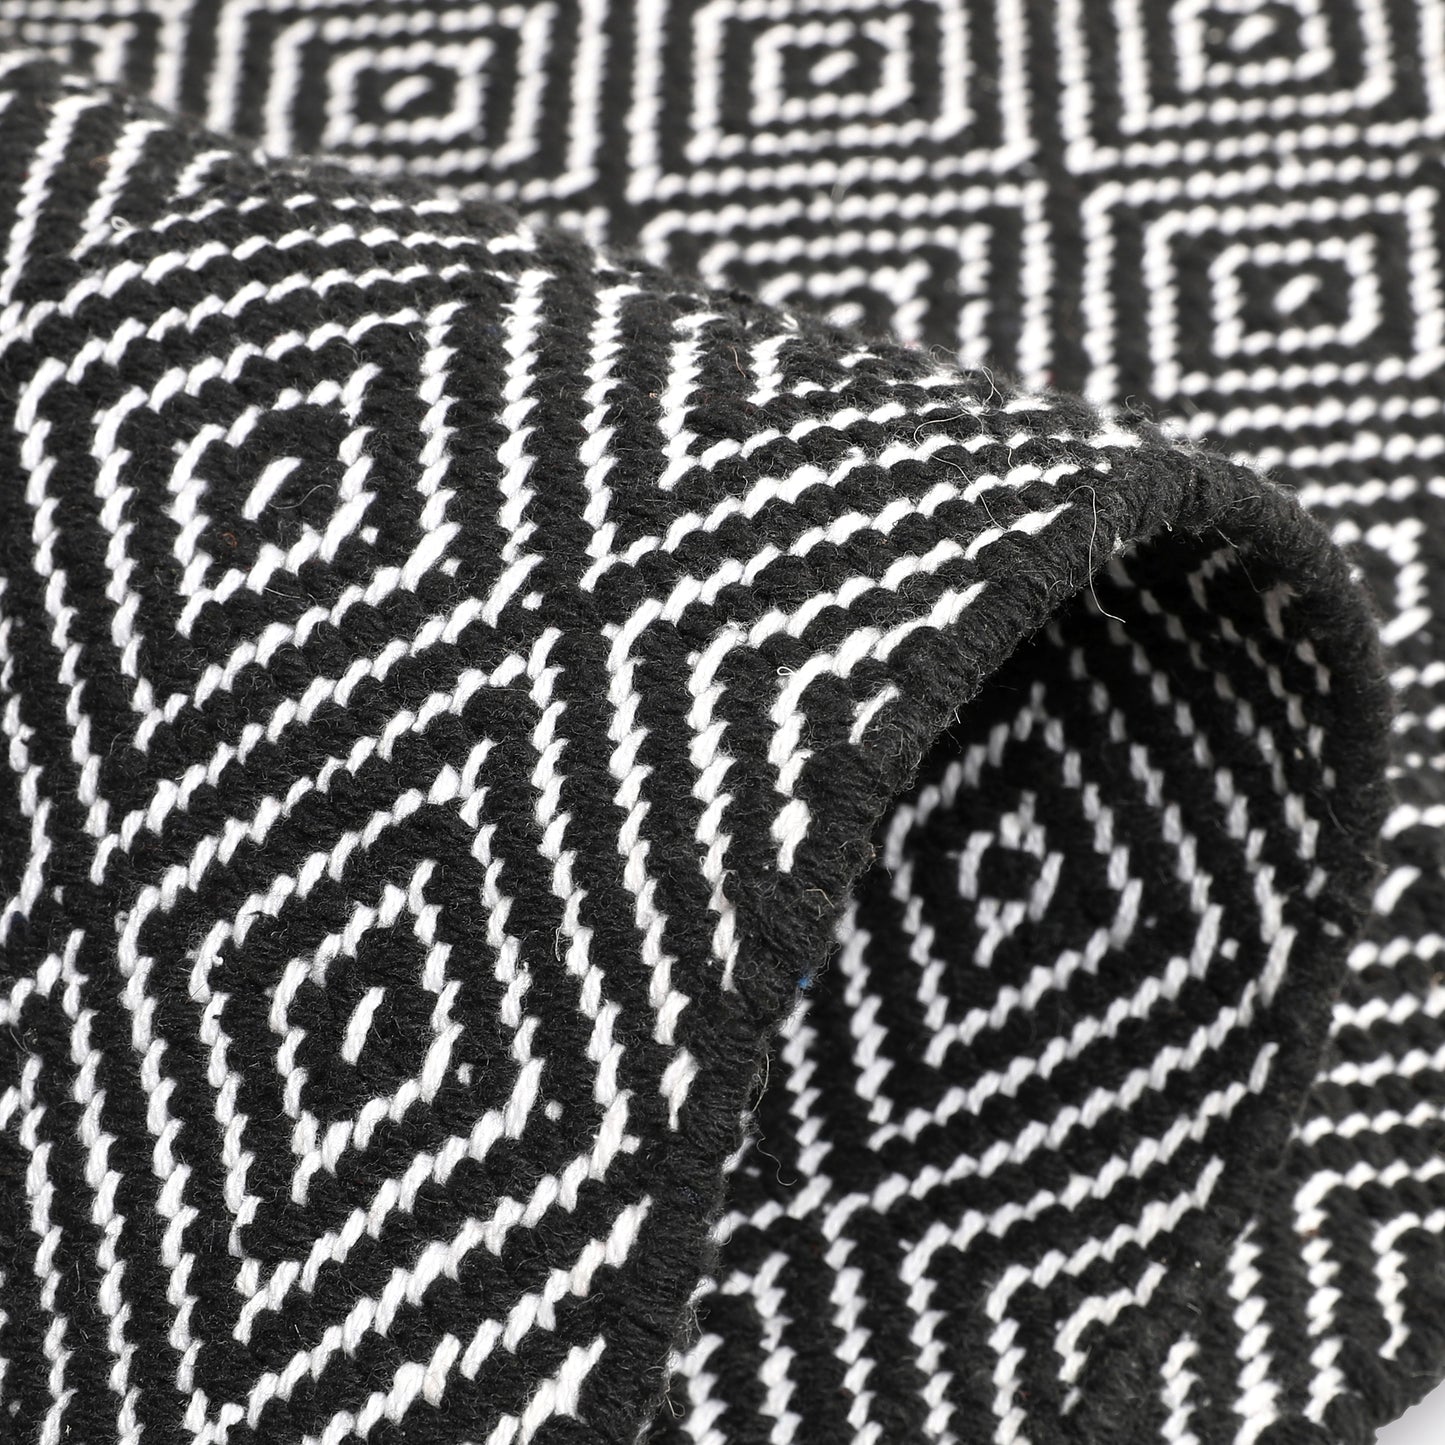 Cotton Area Rug Woven Black White argyle Frills 1188